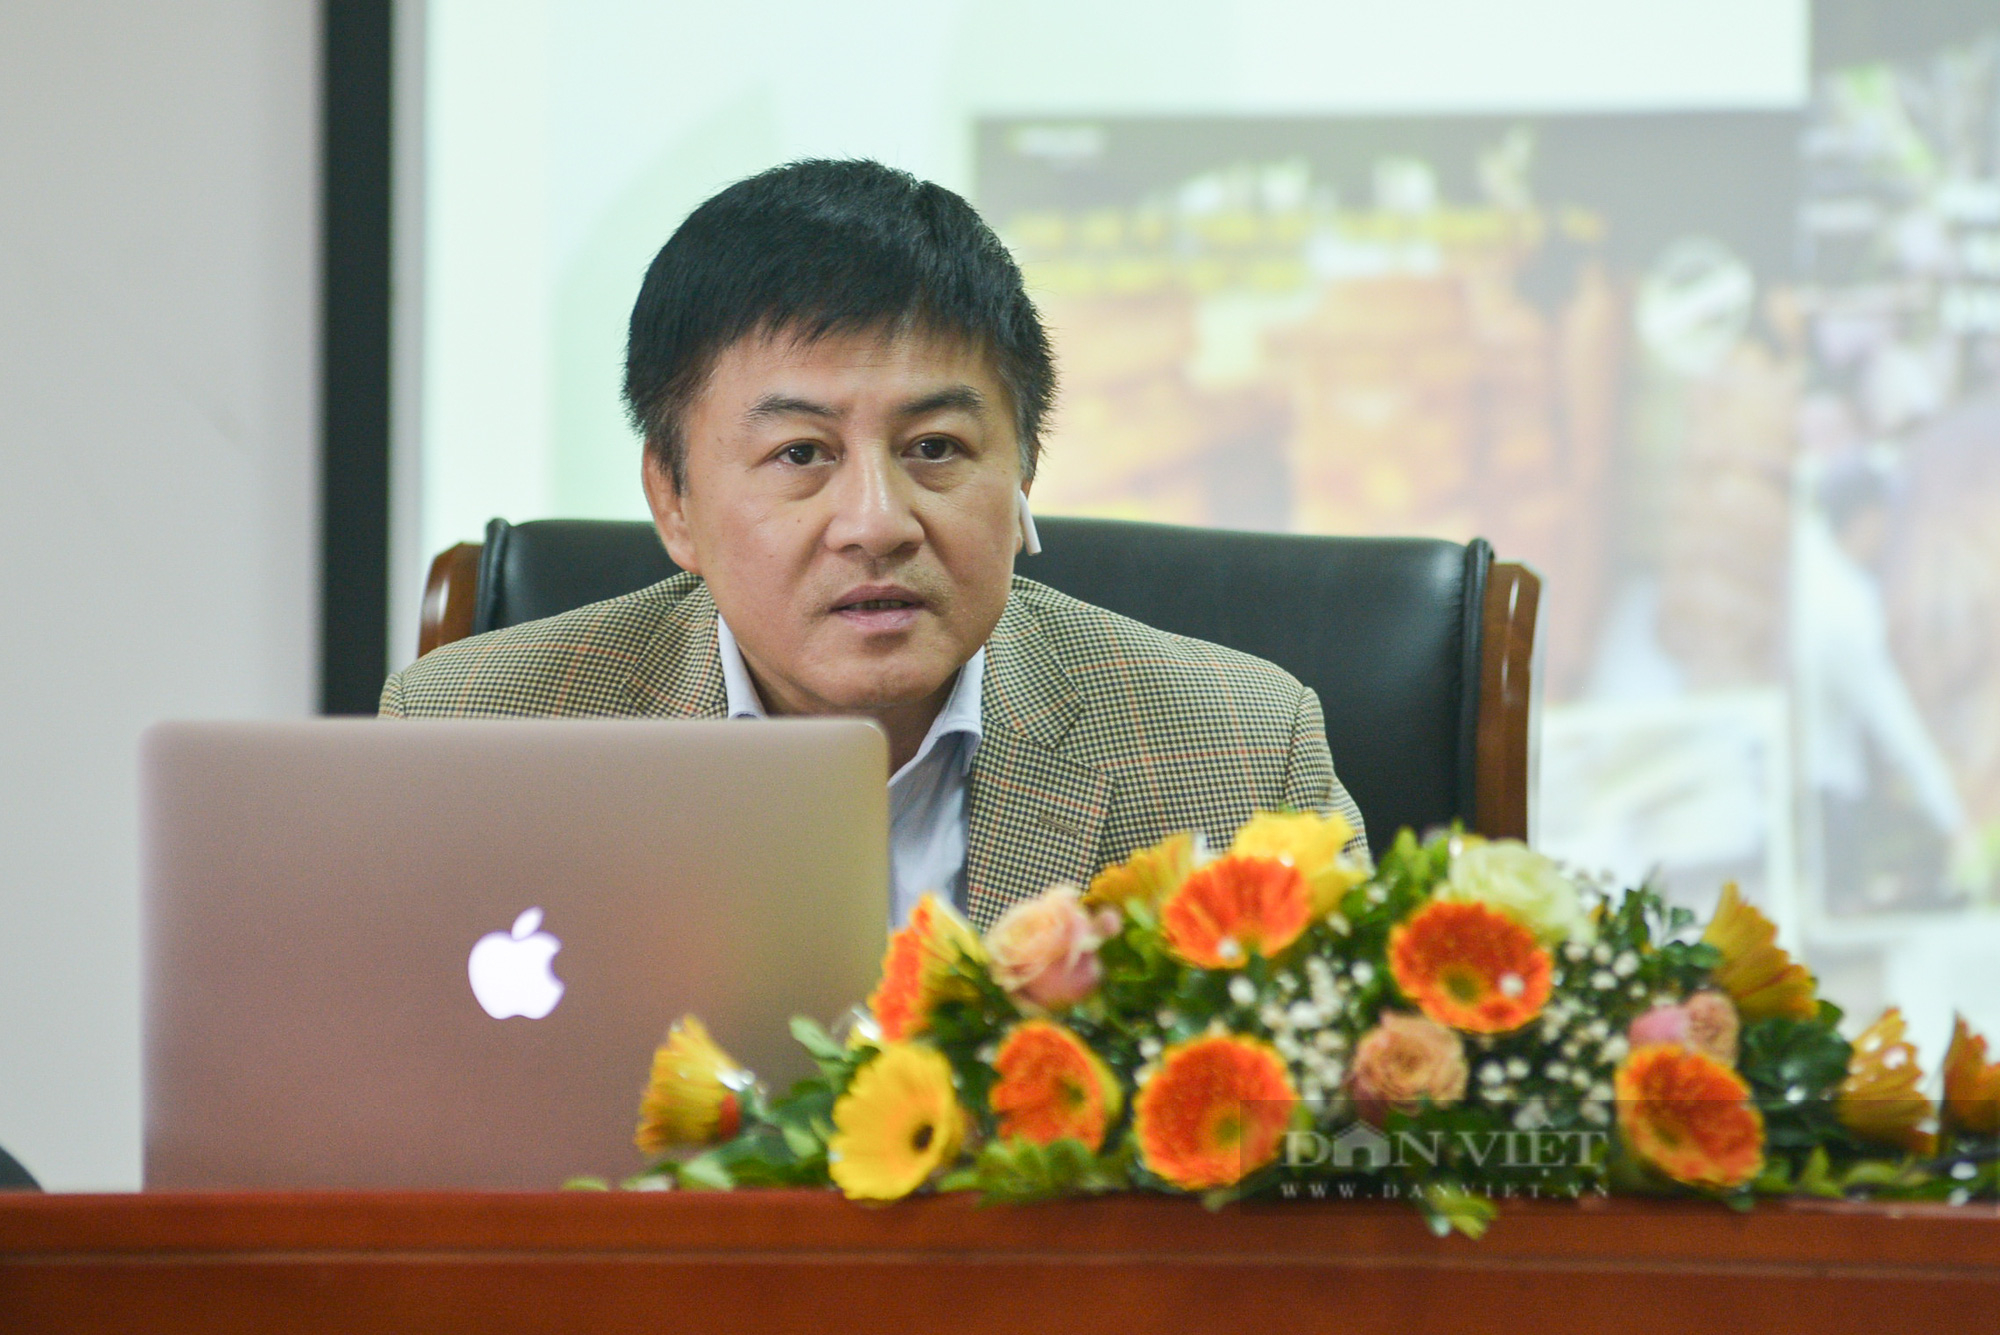 Ảnh: Báo Nông thôn Ngày nay/Dân Việt được tôn vinh trong mảng điều tra báo chí về tội phạm các loài hoang dã năm 2021 - Ảnh 3.